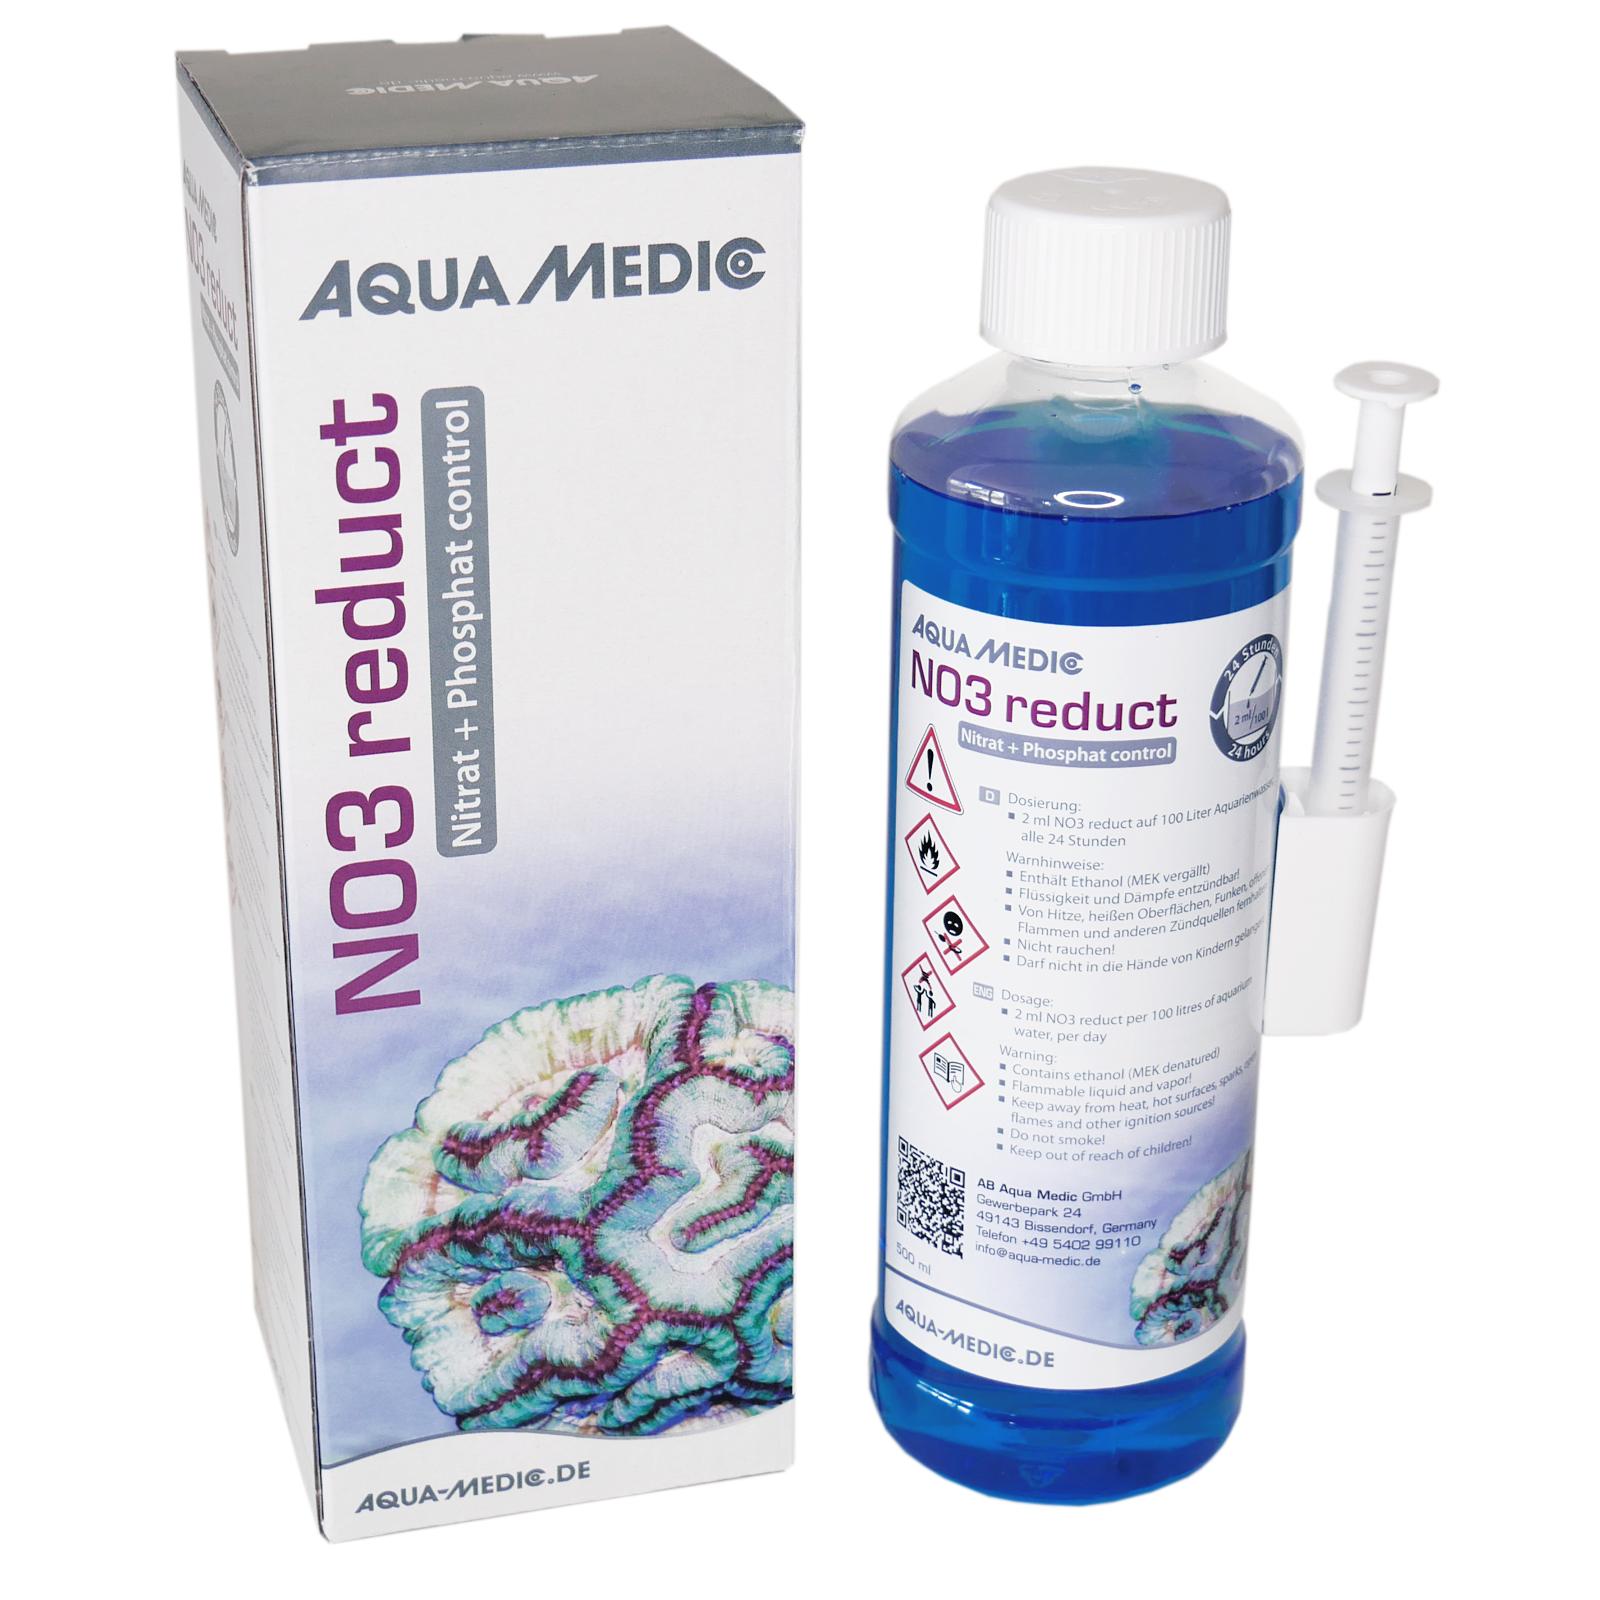 Aqua Medic no3 reduct